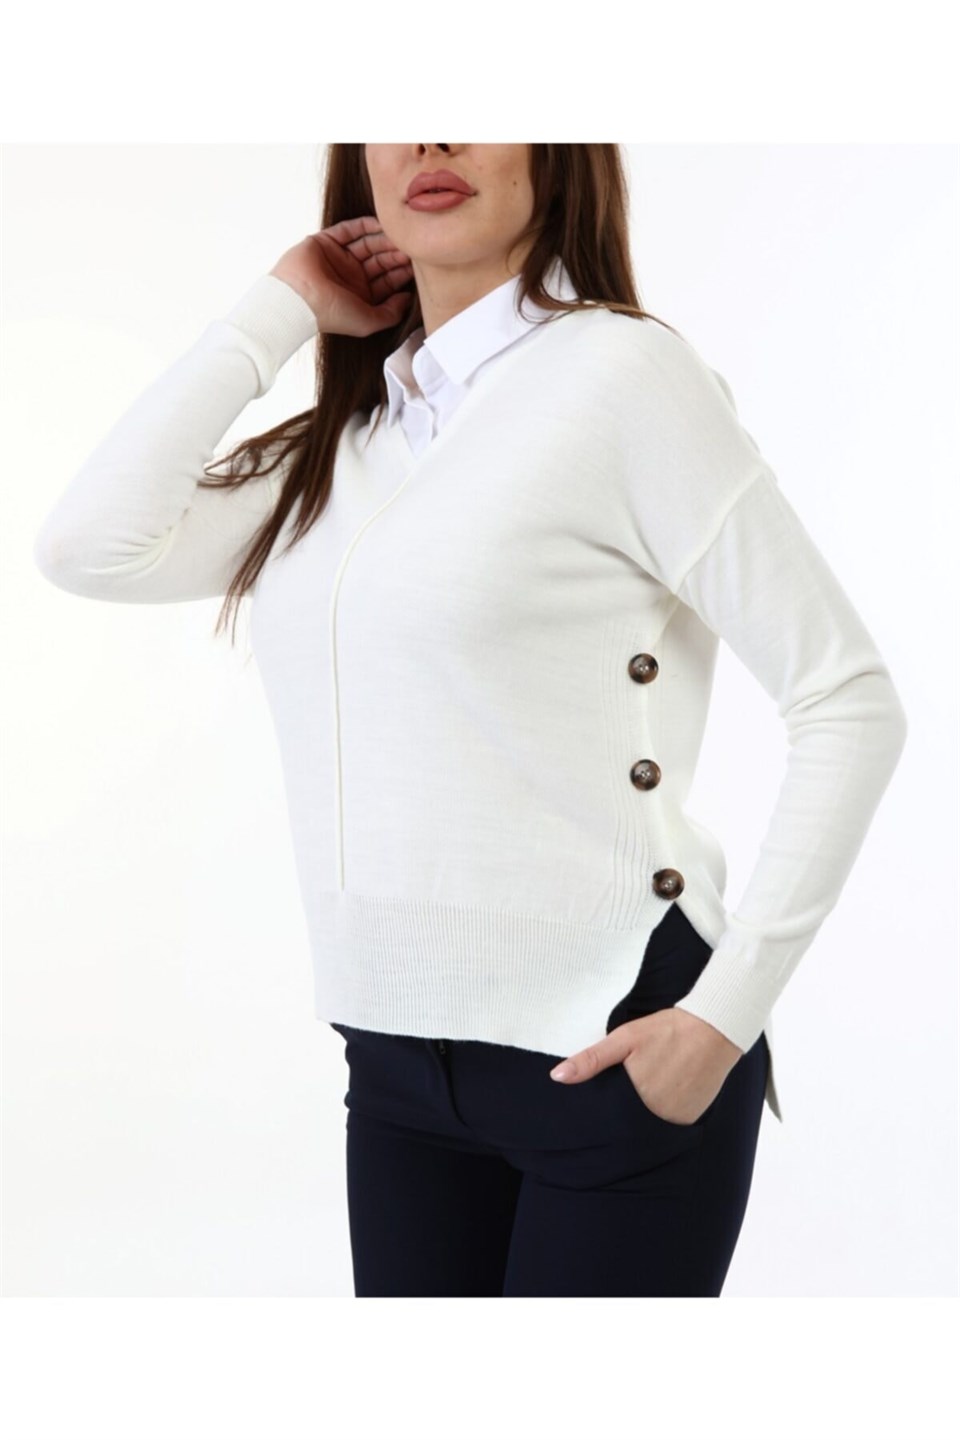 Kadın Yandan Düğmeli Gömlek Yaka Beyaz Kazak